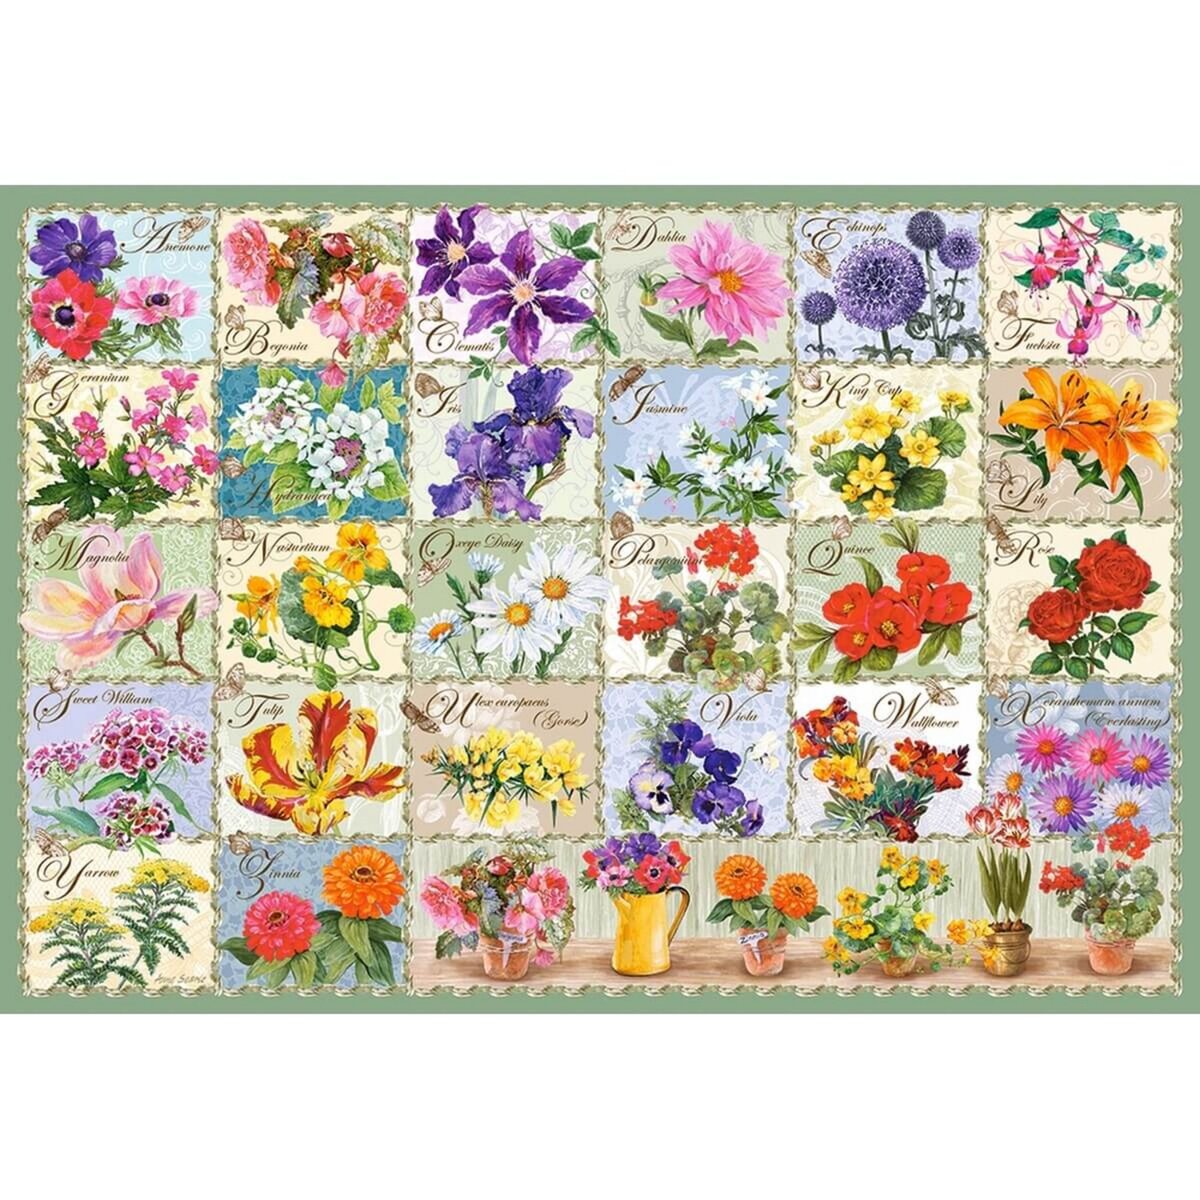 Castorland Puzzle 1000 pièces : Fleurs vintage